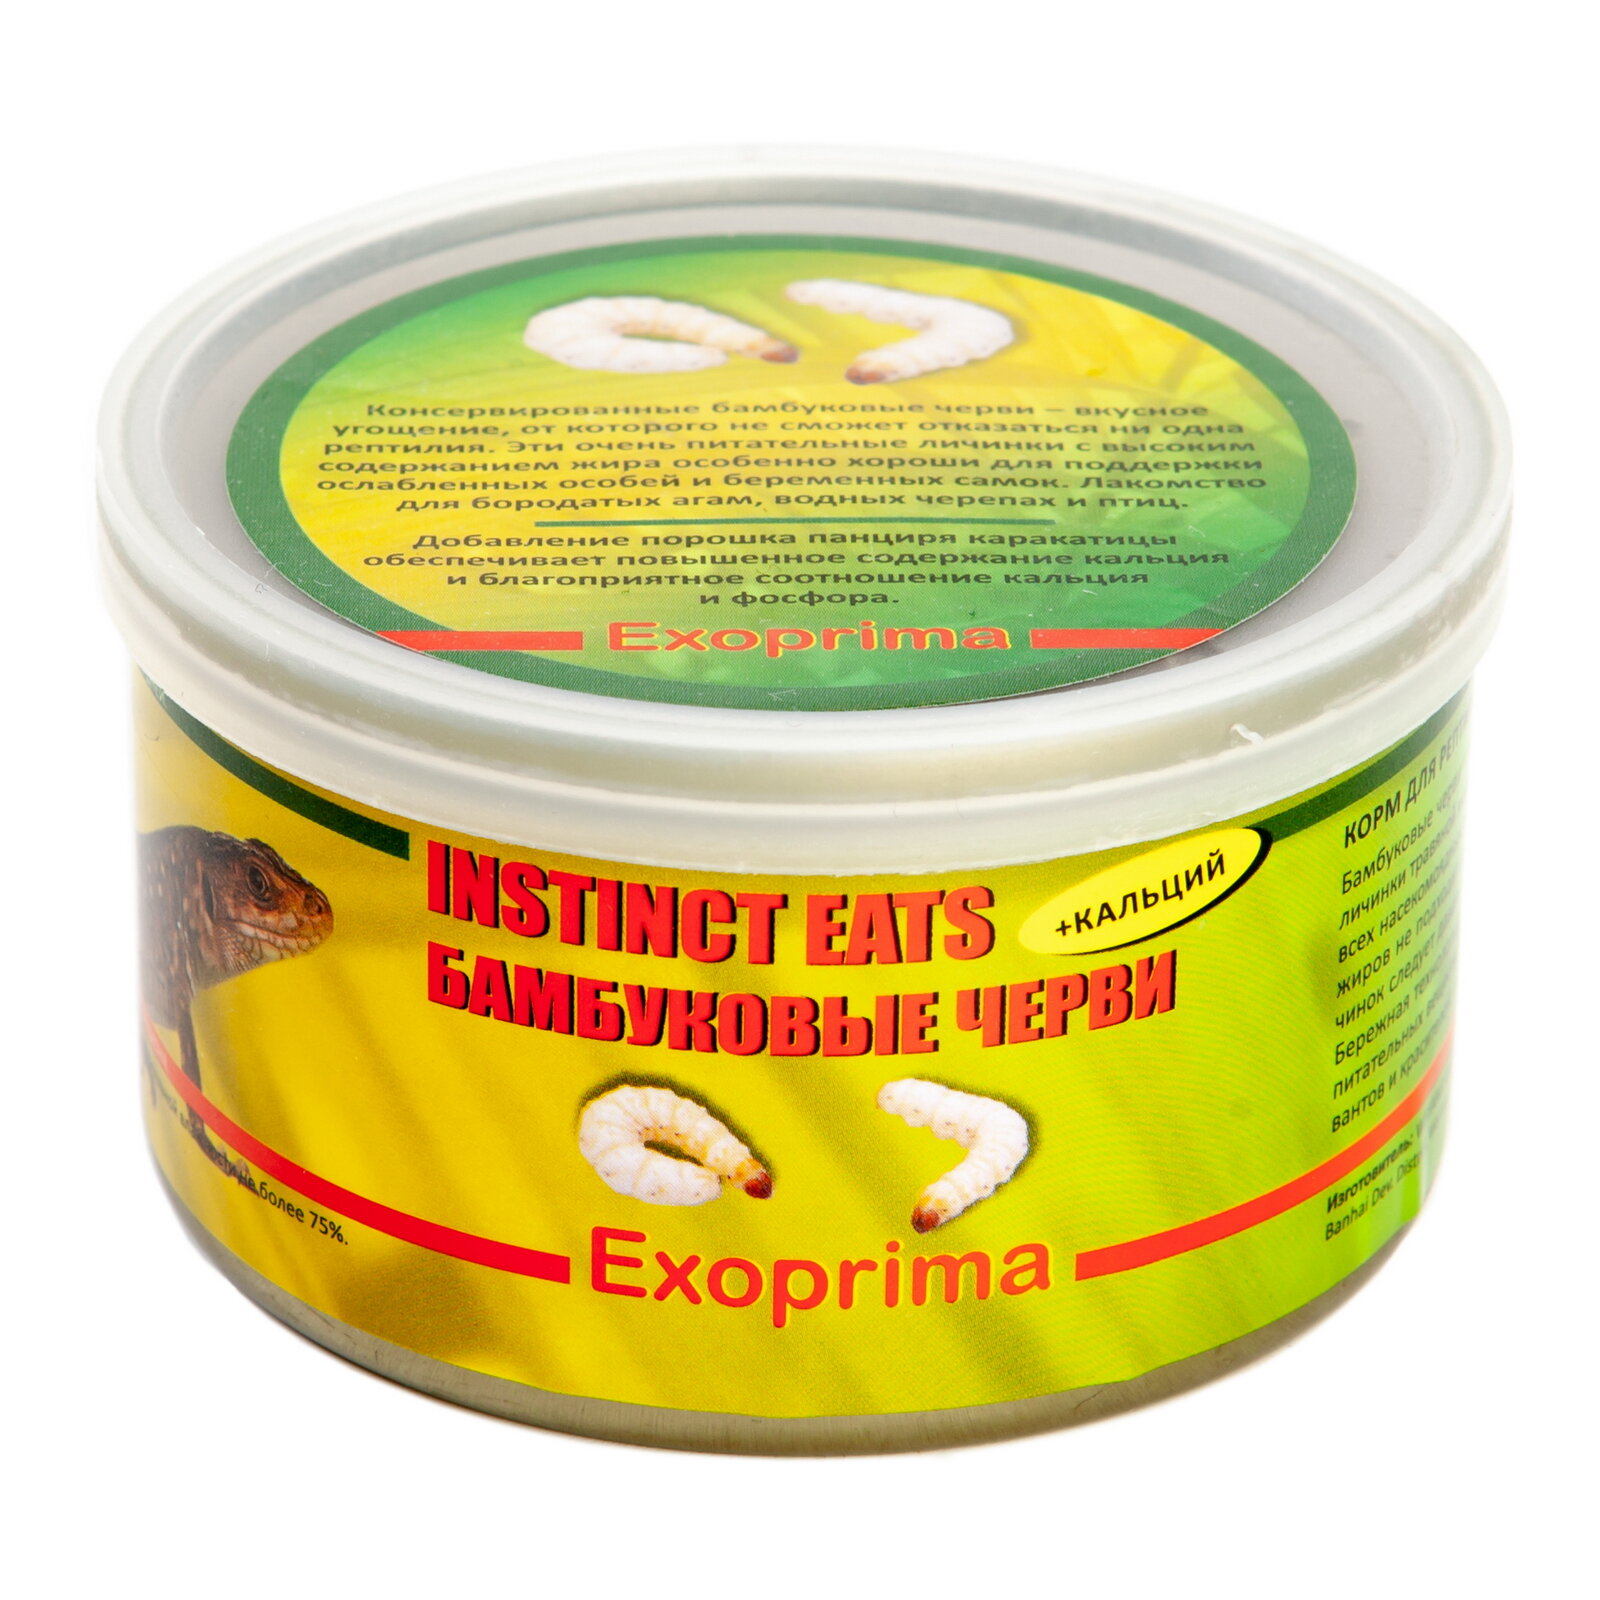 EXOPRIMA Instinct Eats Корм для рептилий консервированный "Бамбуковые черви", З5гр Exoprima ExoFood - фото №7